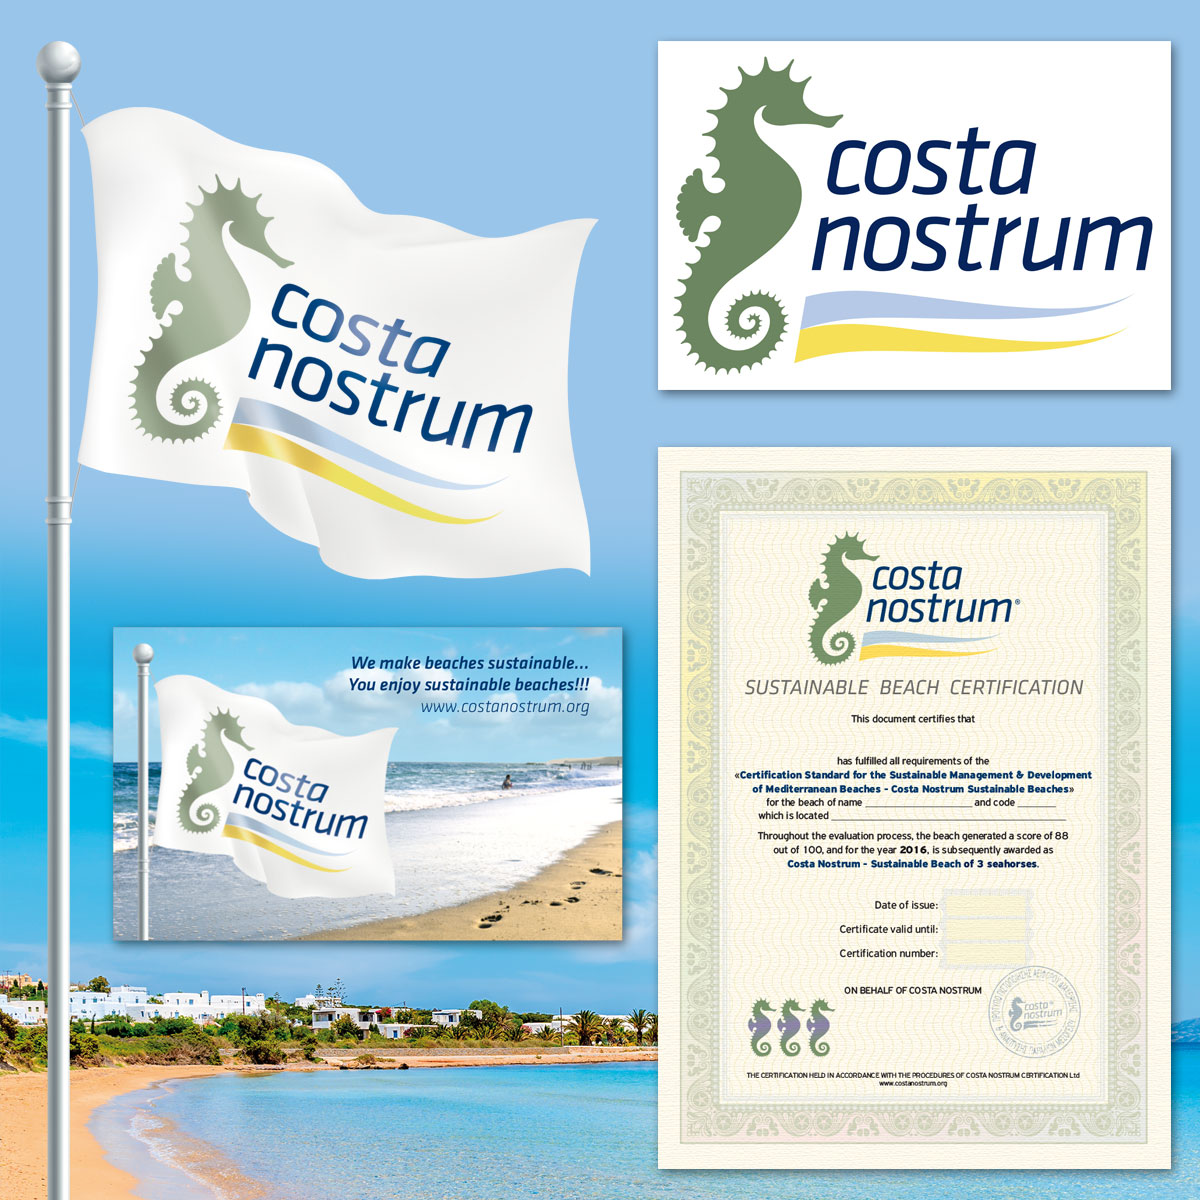 Costa Nostrum